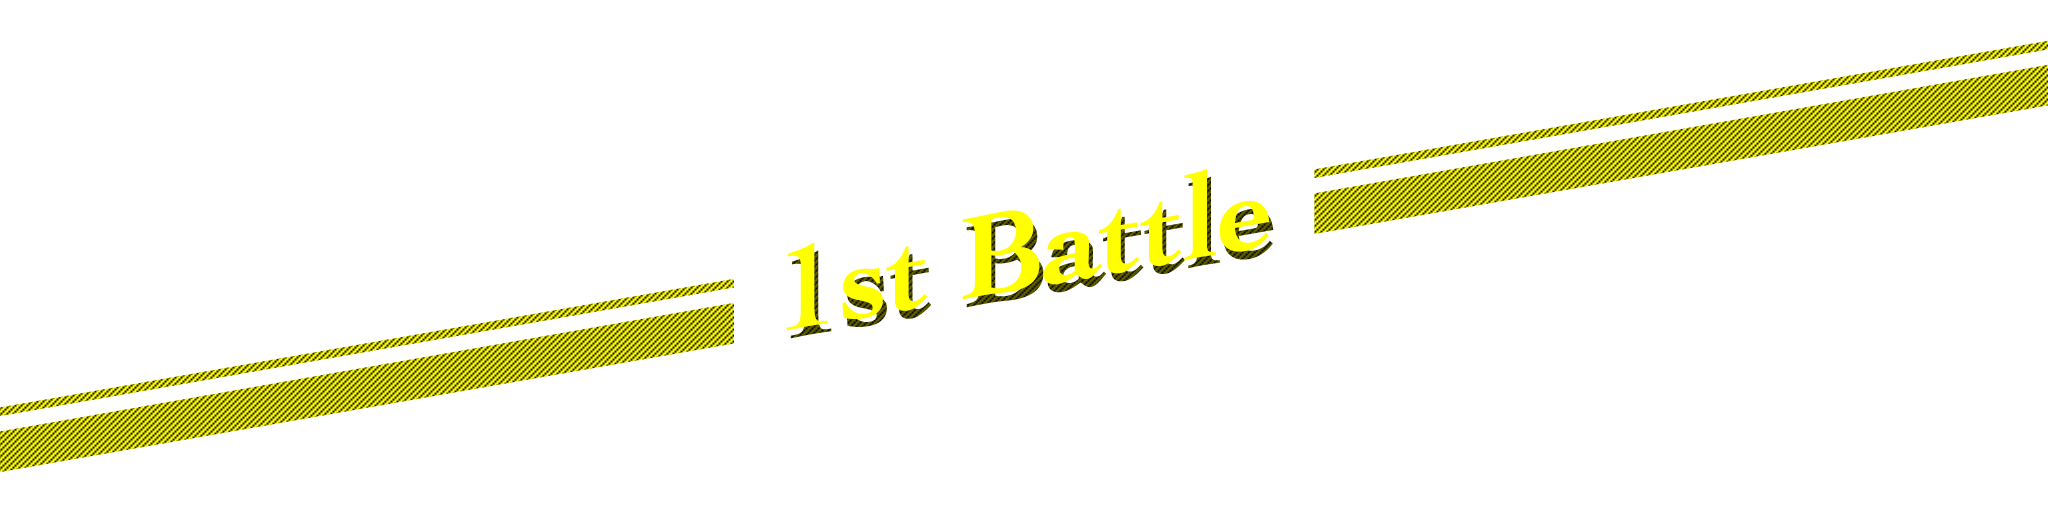 1st Battle